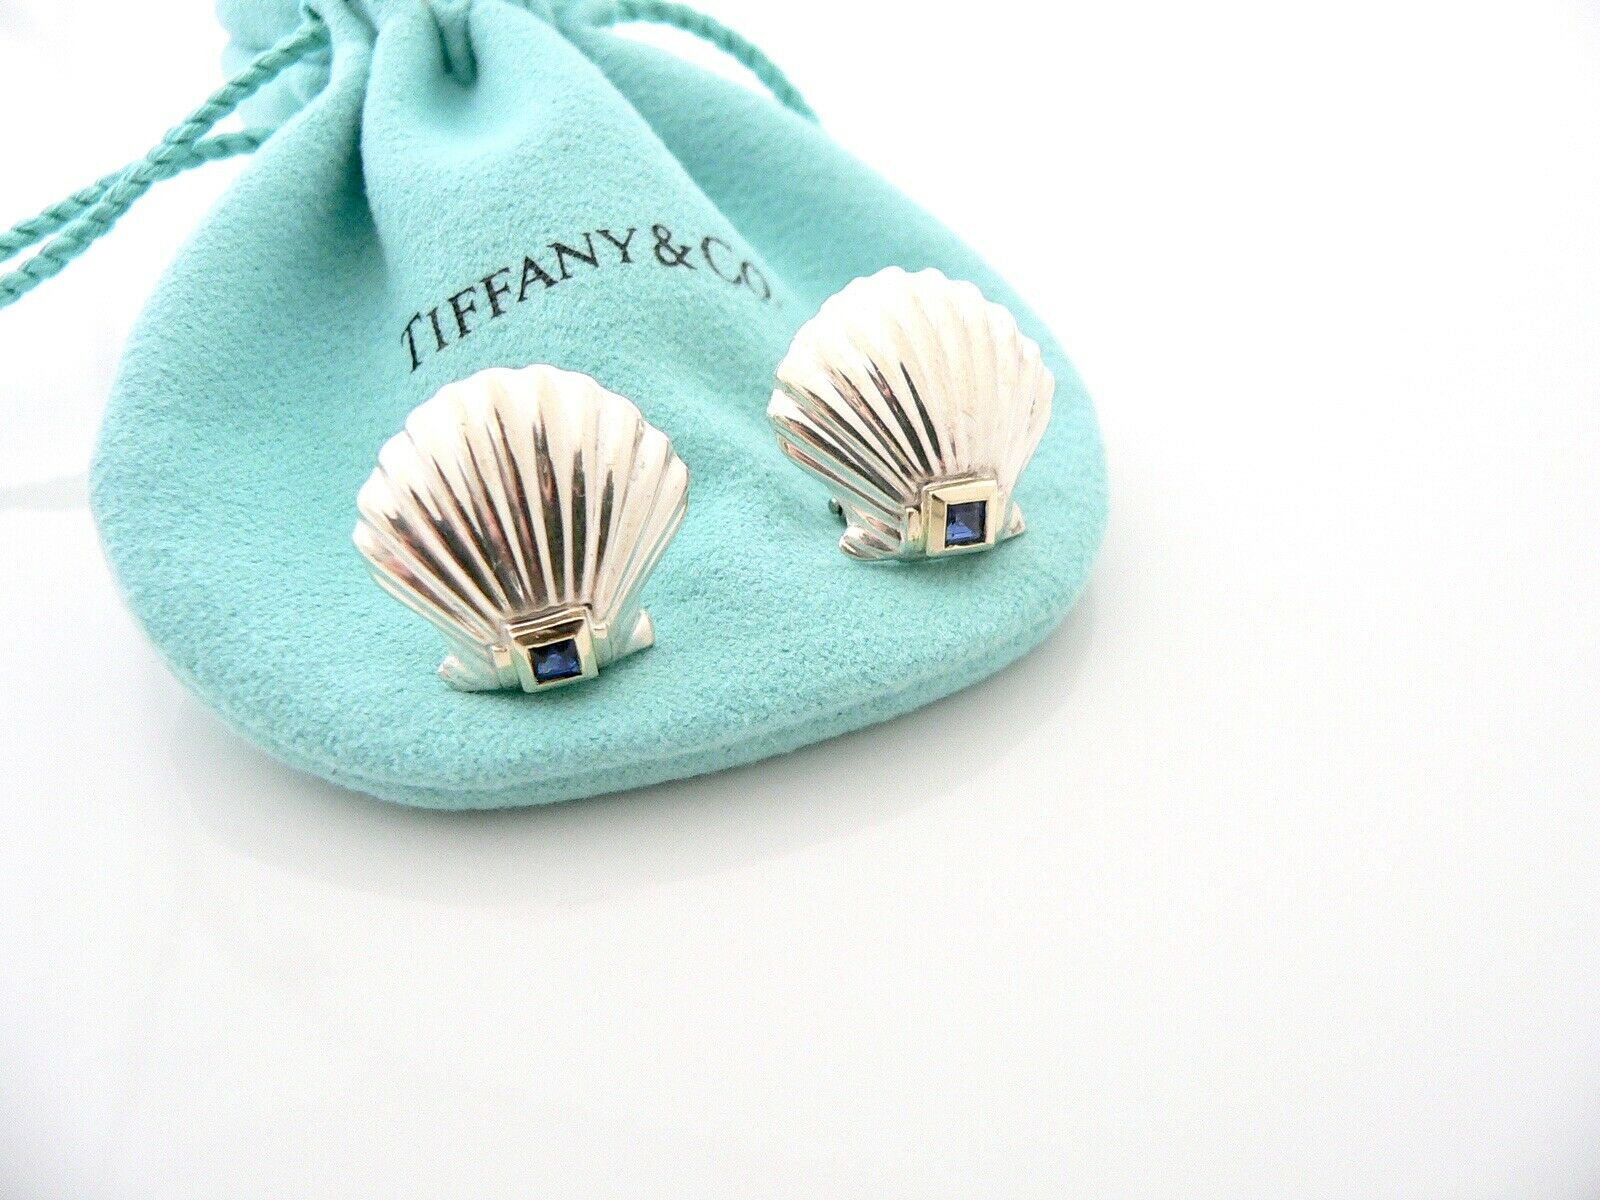 Tiffany & Co Silver 18K Gold Shell Blue Sapphire Pierced Earrings Gift Love Art